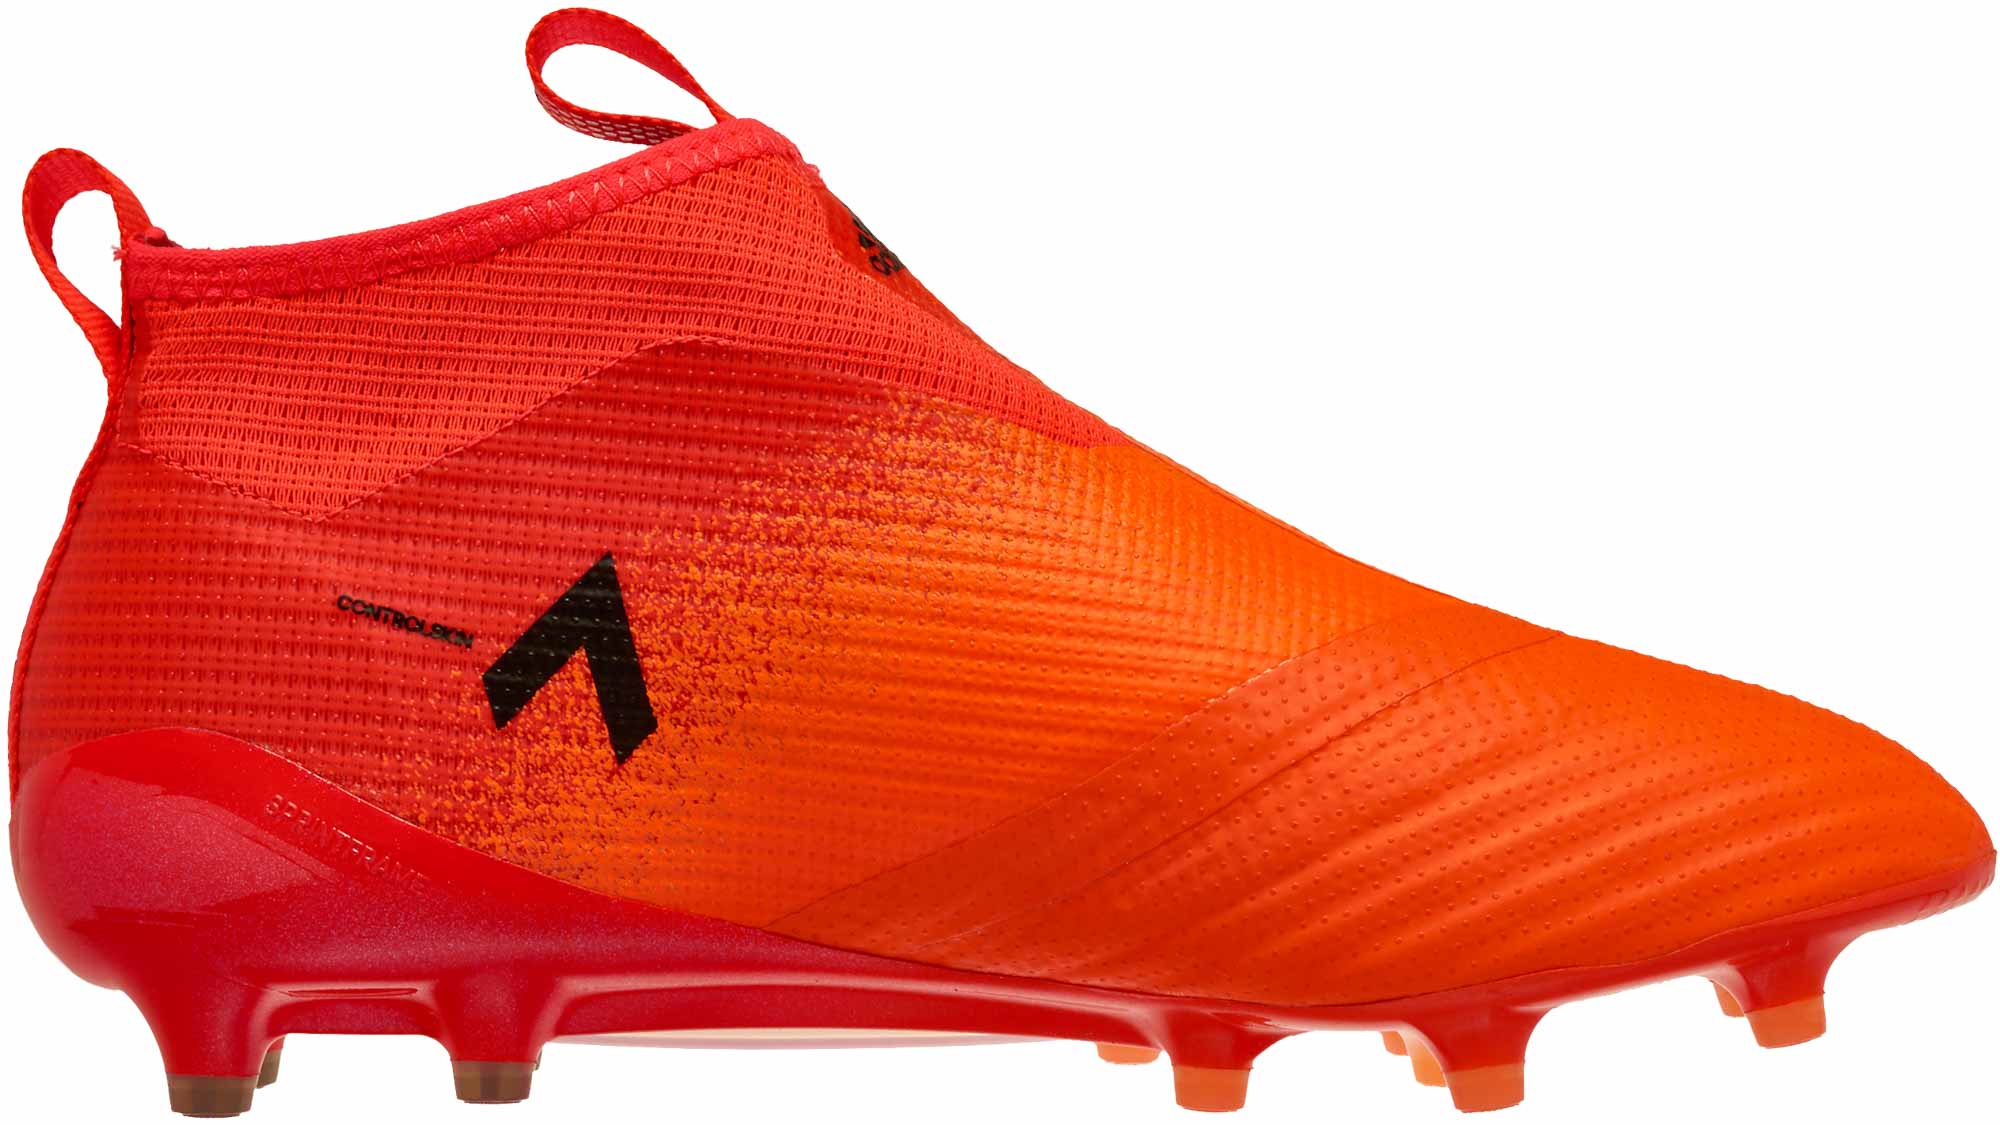 adidas soccer shoes orange